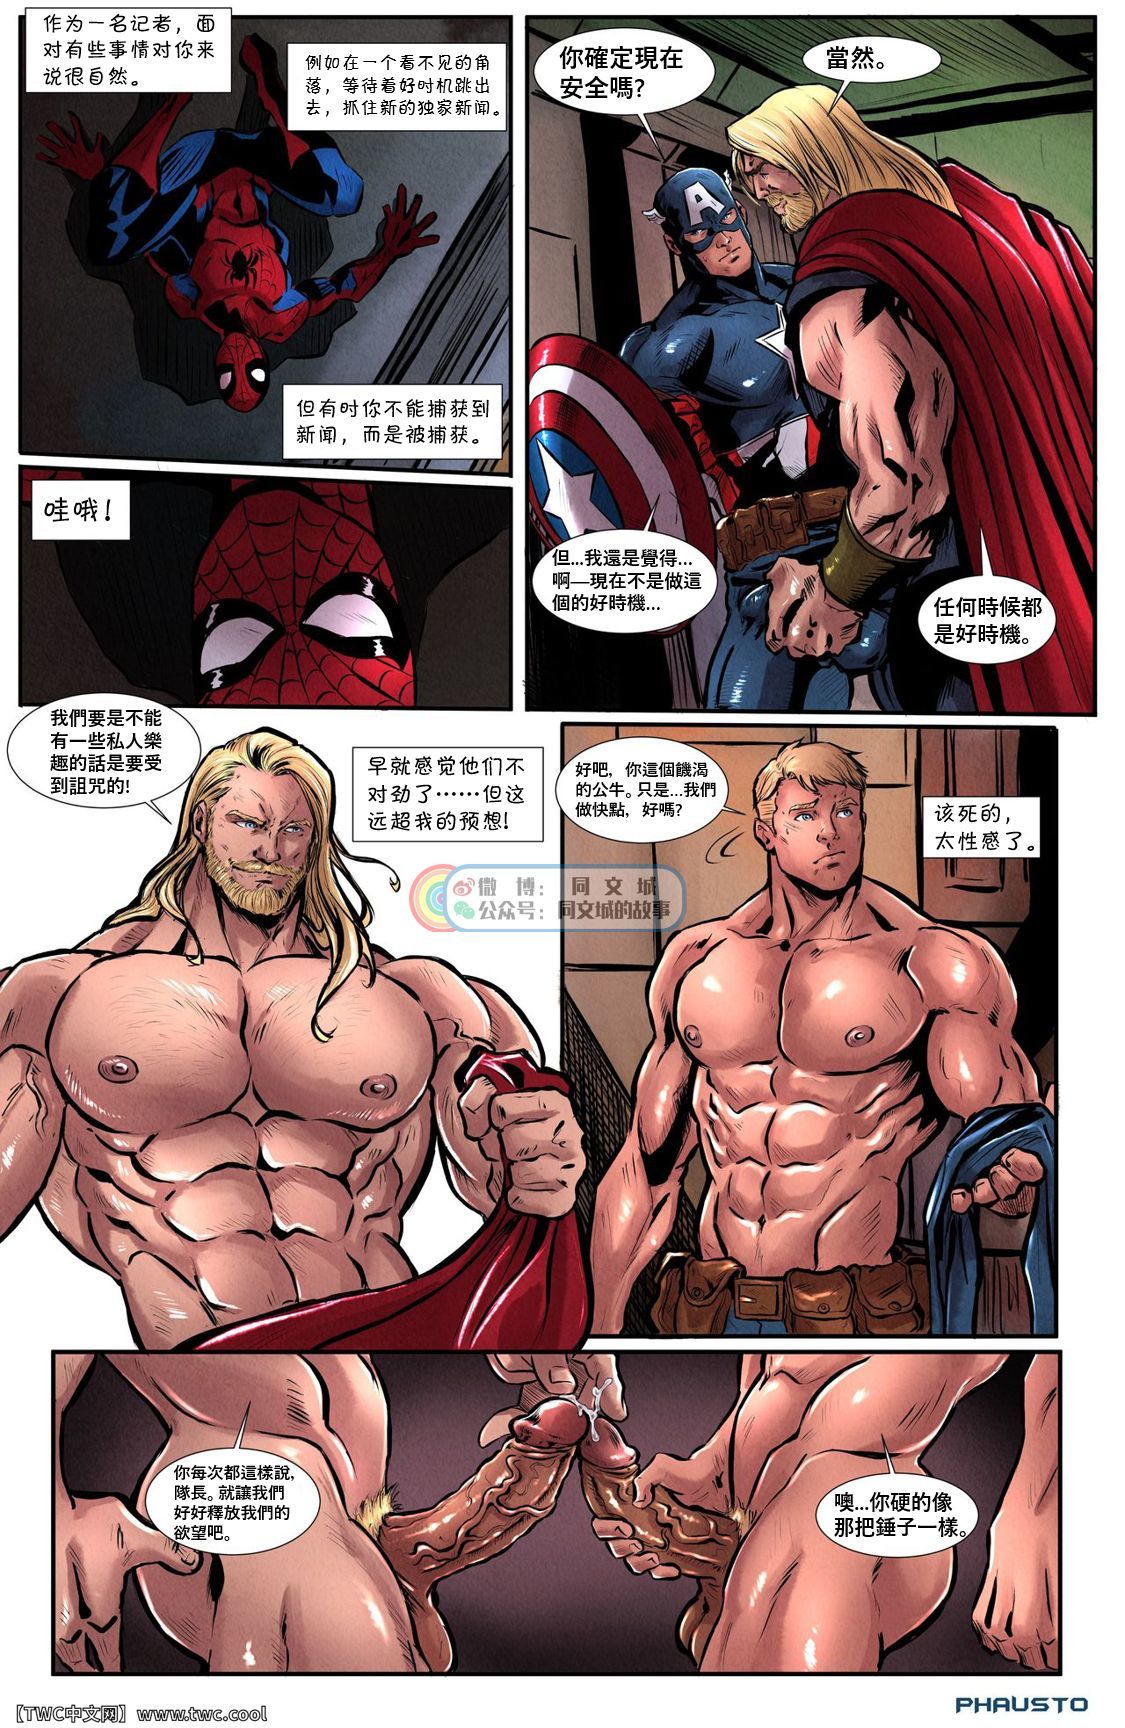 Avengers 1 - avengers - Free Hentai Manga, Doujins & XXX